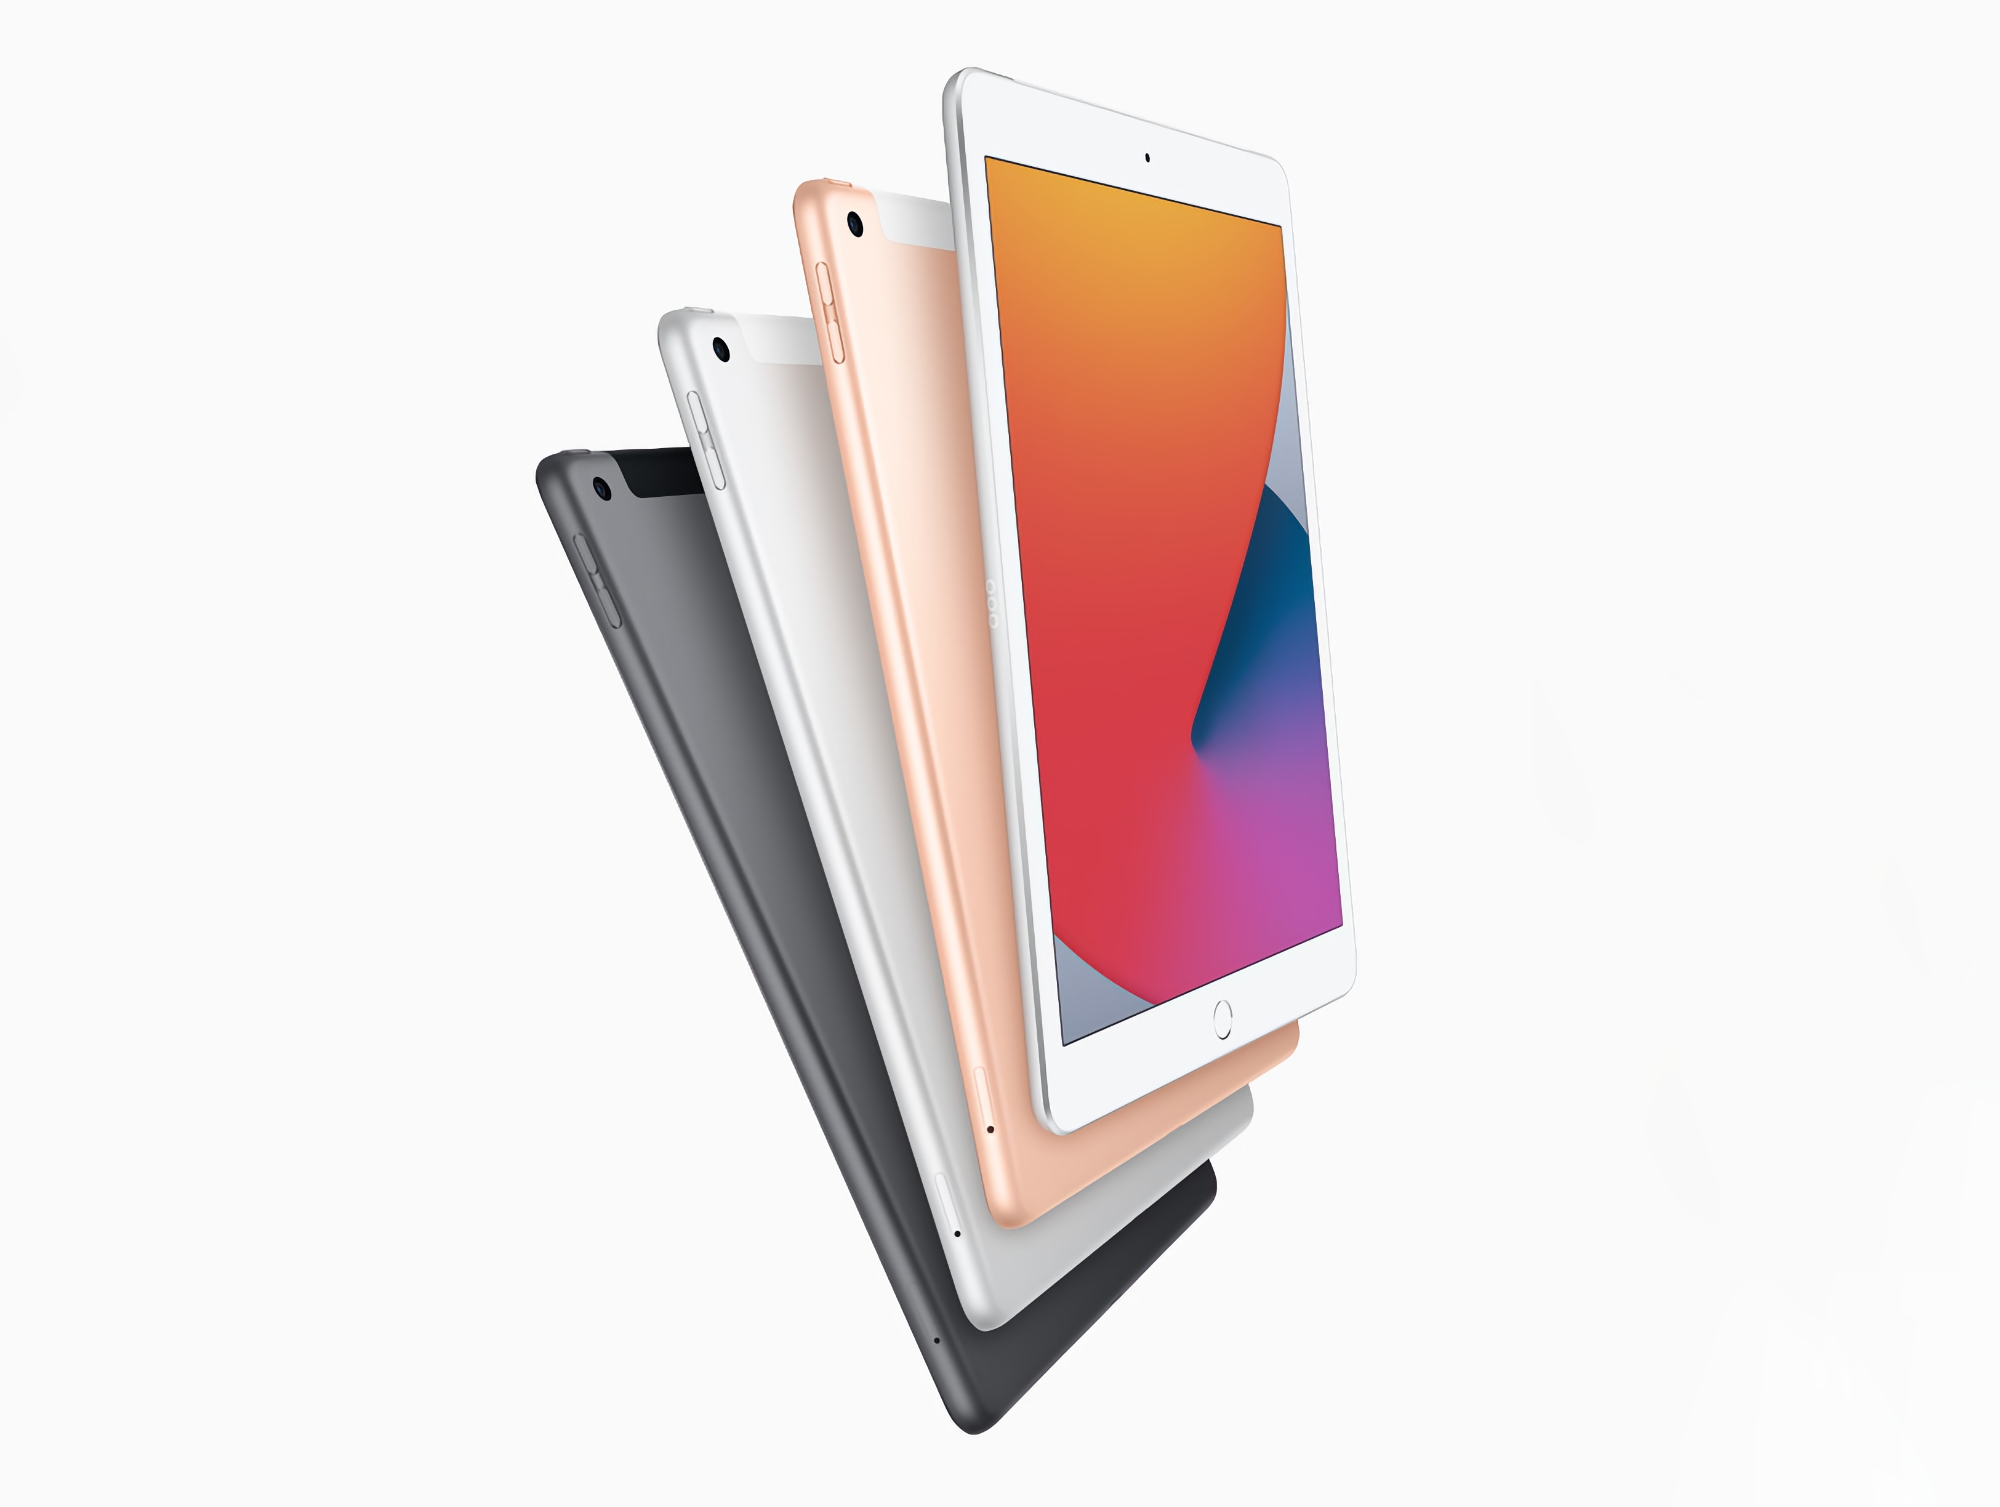 Das nächstgünstigere iPad bekommt ein größeres Display, einen A14 Bionic Chip und einen USB-C Anschluss